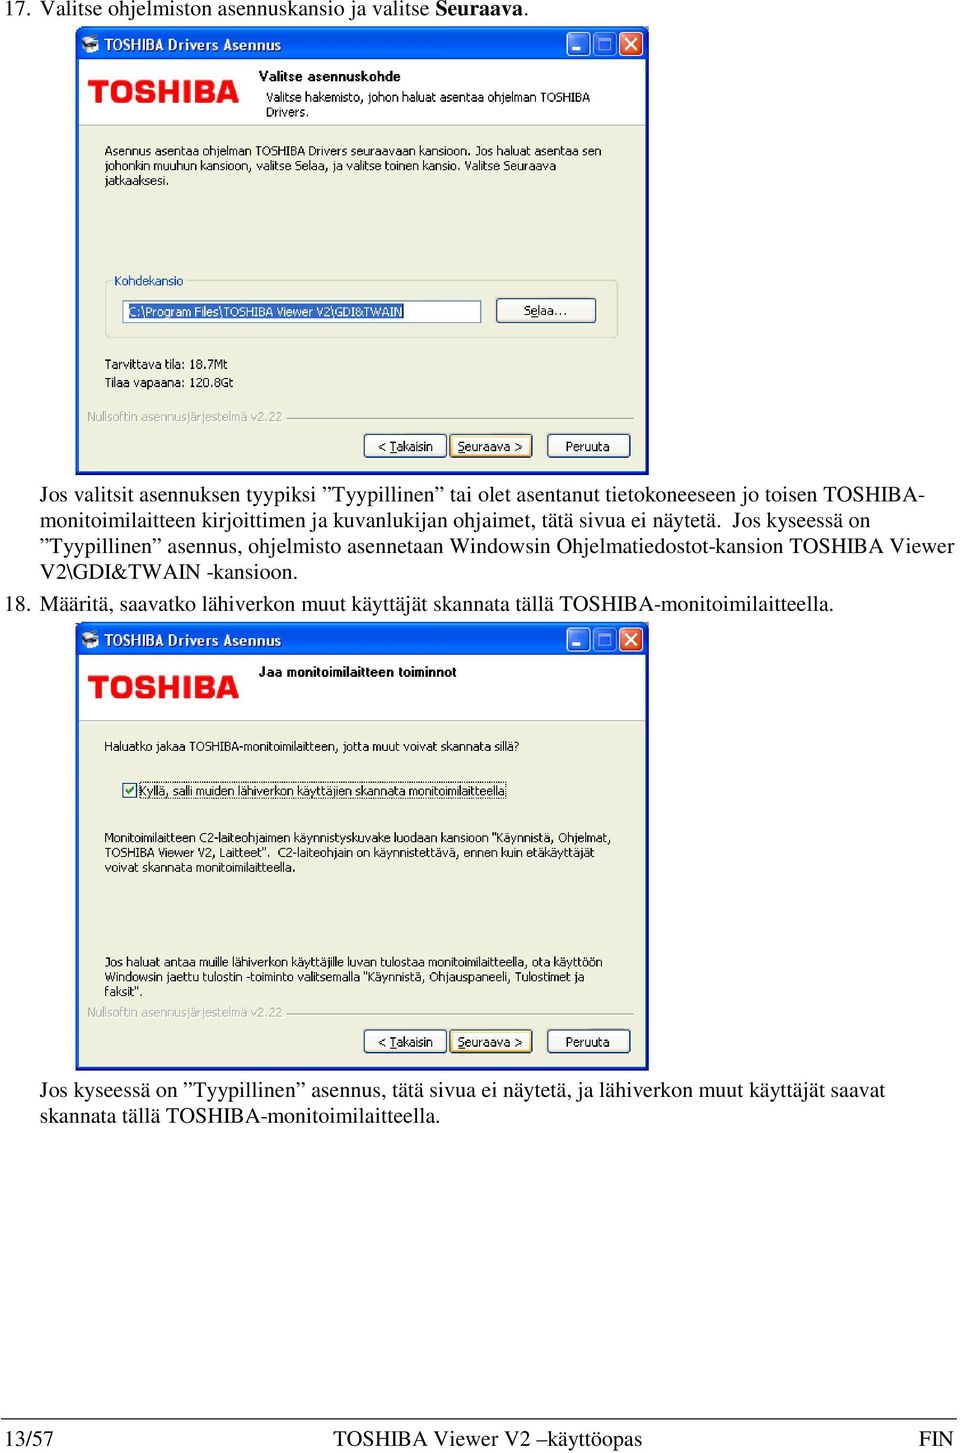 sivua ei näytetä. Jos kyseessä on Tyypillinen asennus, ohjelmisto asennetaan Windowsin Ohjelmatiedostot-kansion TOSHIBA Viewer V2\GDI&TWAIN -kansioon. 18.